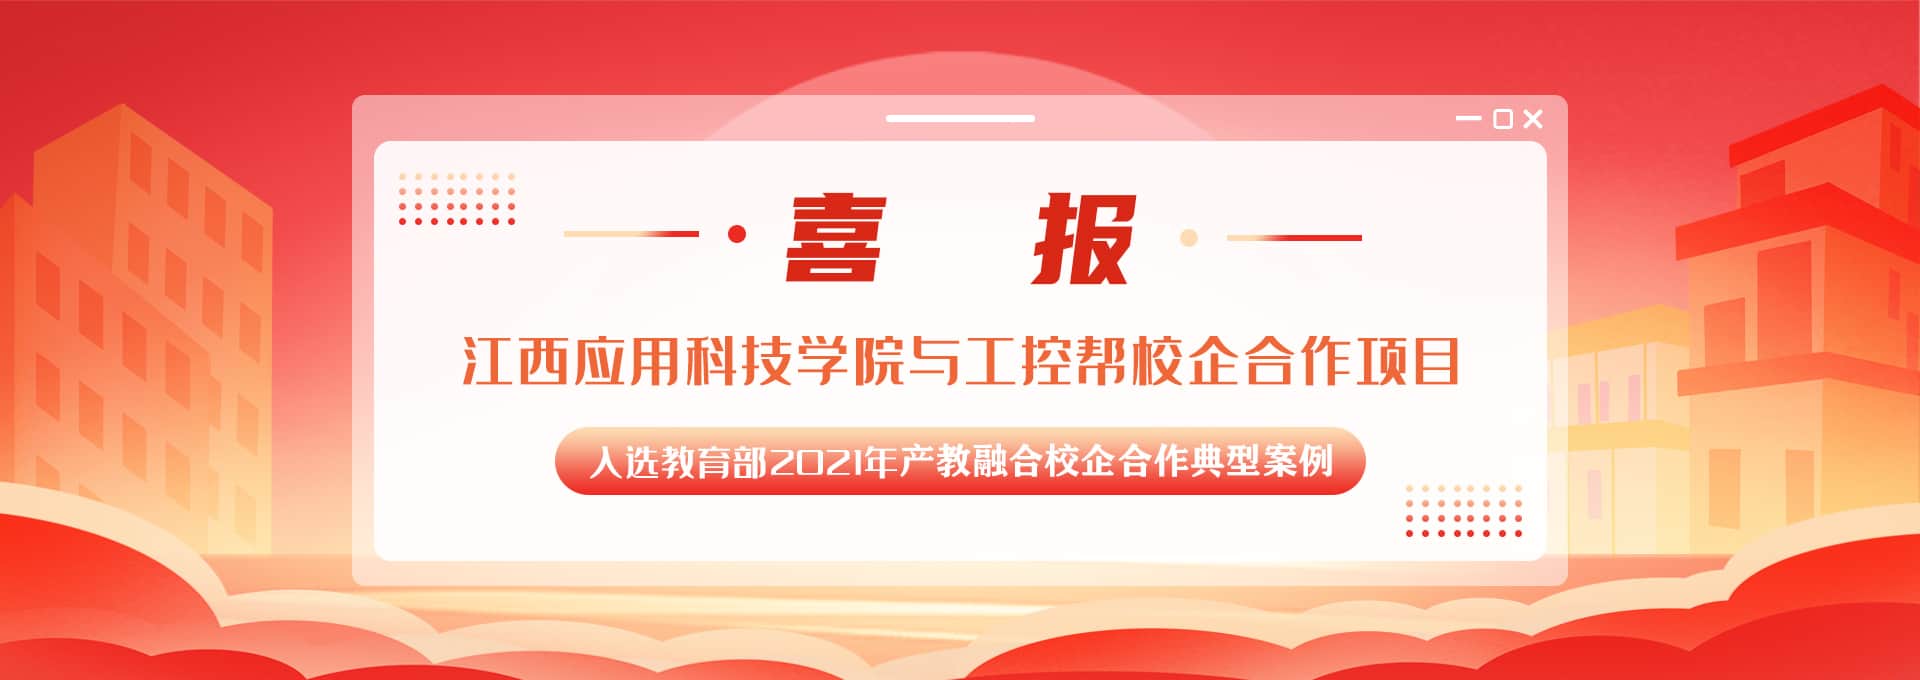 工控幫電工培訓、工業機器人培訓、PLC培訓、自動化培訓學校被認定為湖南省首批產教融合型建設企業